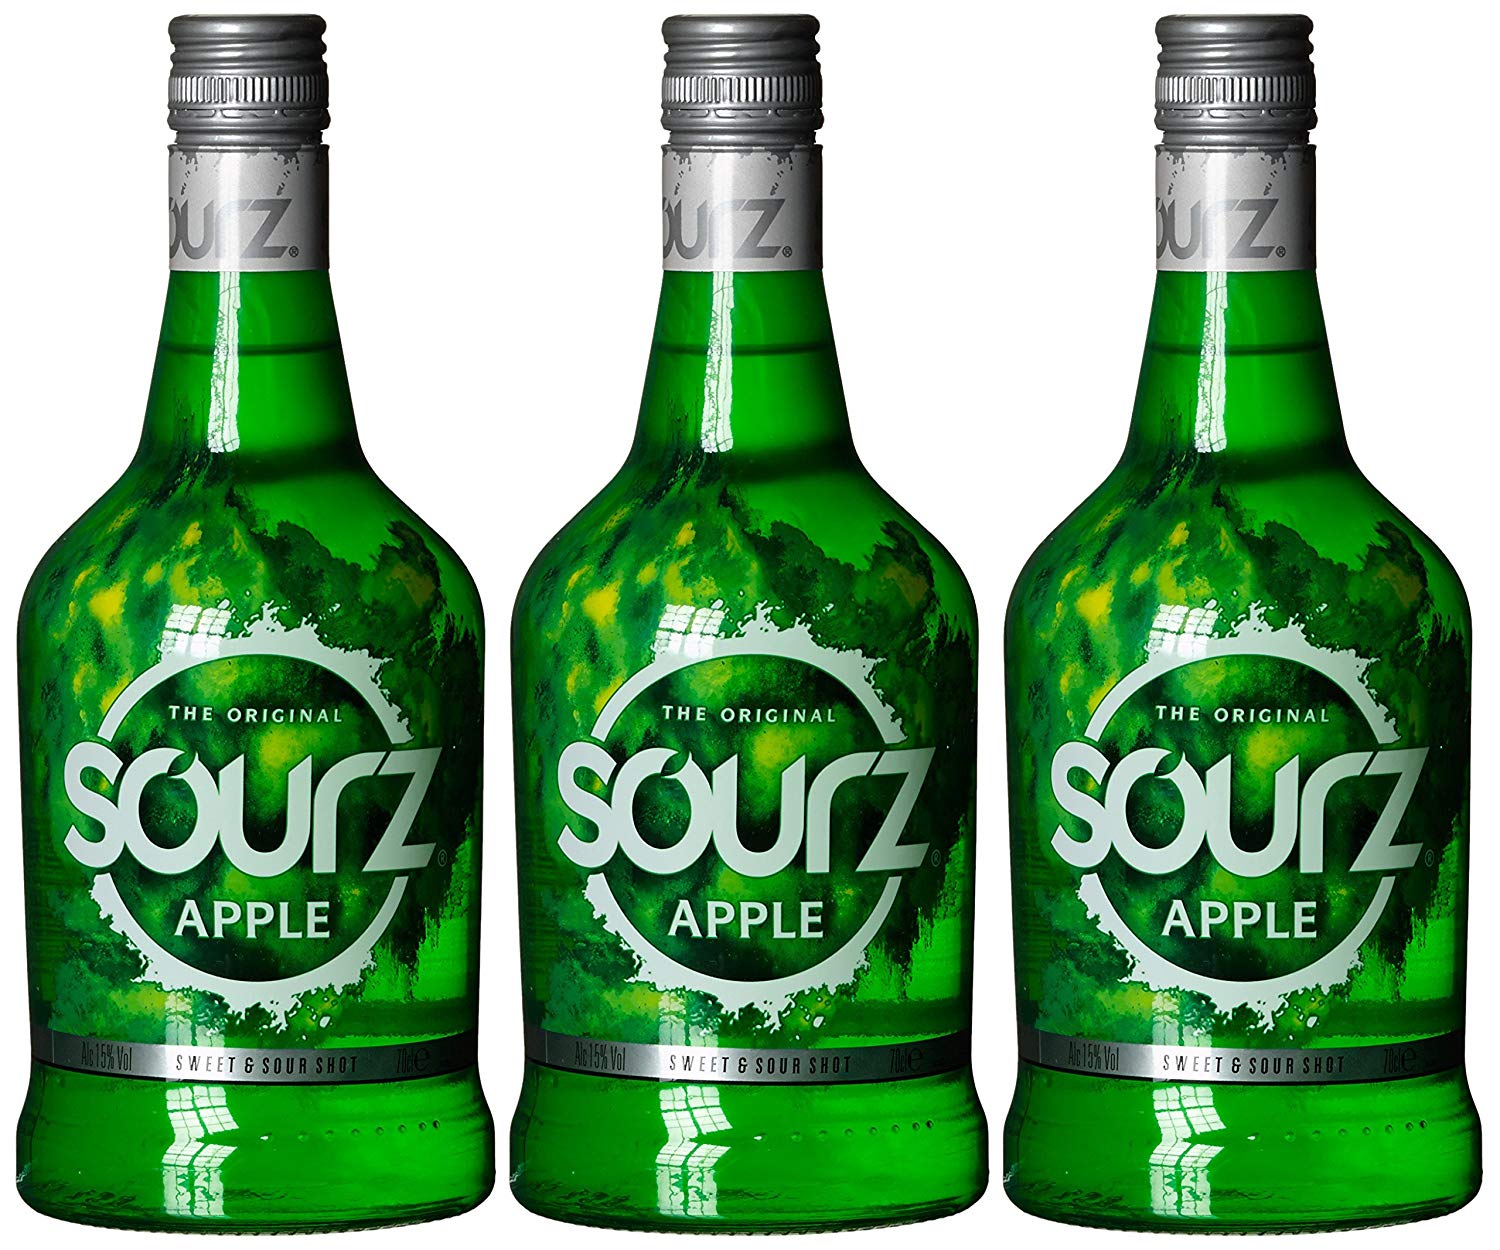 3 Botellas Sourz licor de manzana solo 15,7€